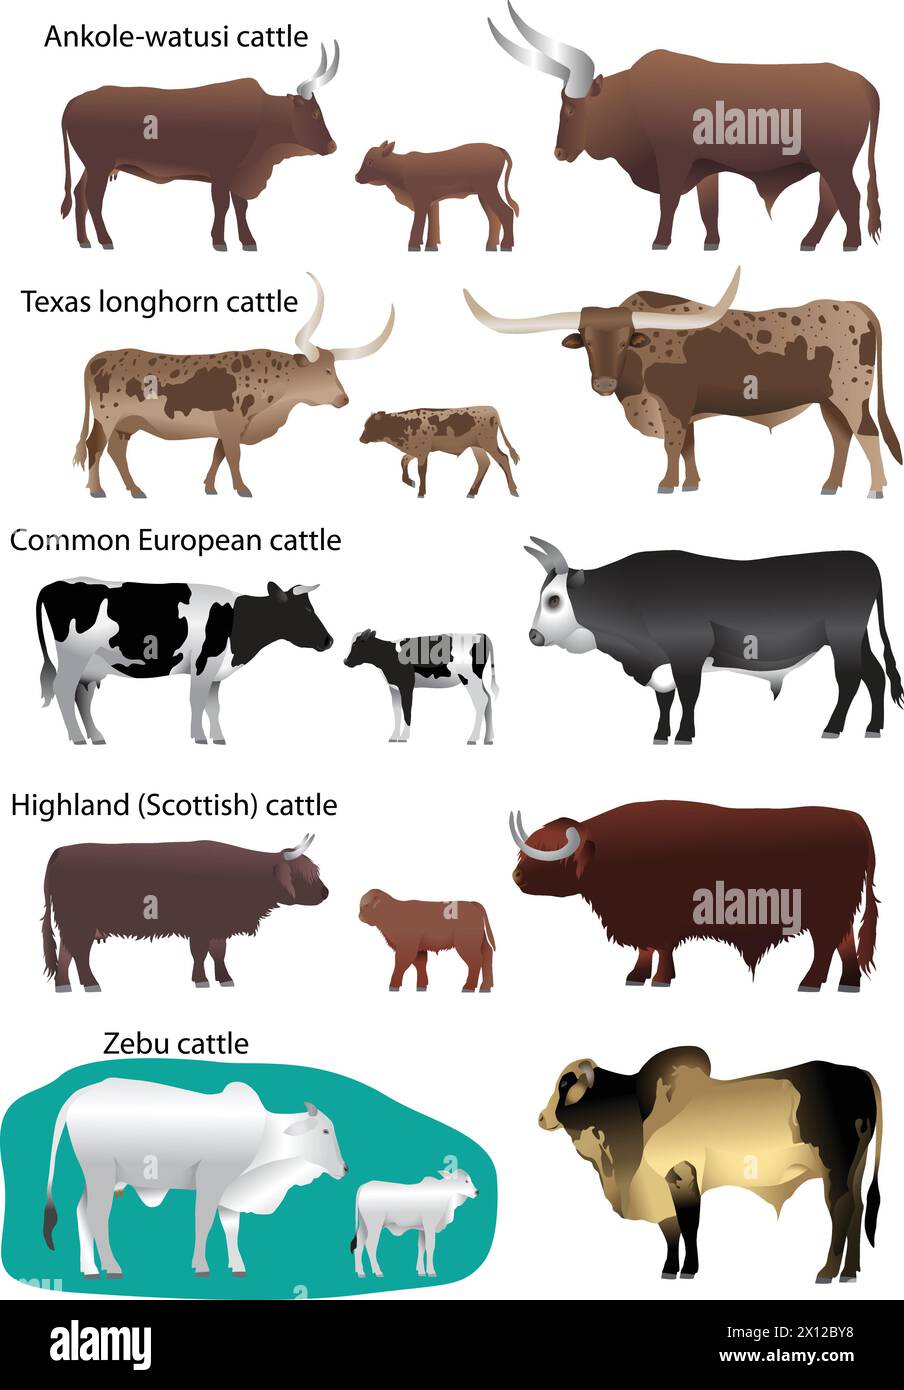 Collecte de différentes espèces de bovins : européen commun, texas longhorn, Highland (écossais), watusi (ankole-watusi), zébu Illustration de Vecteur